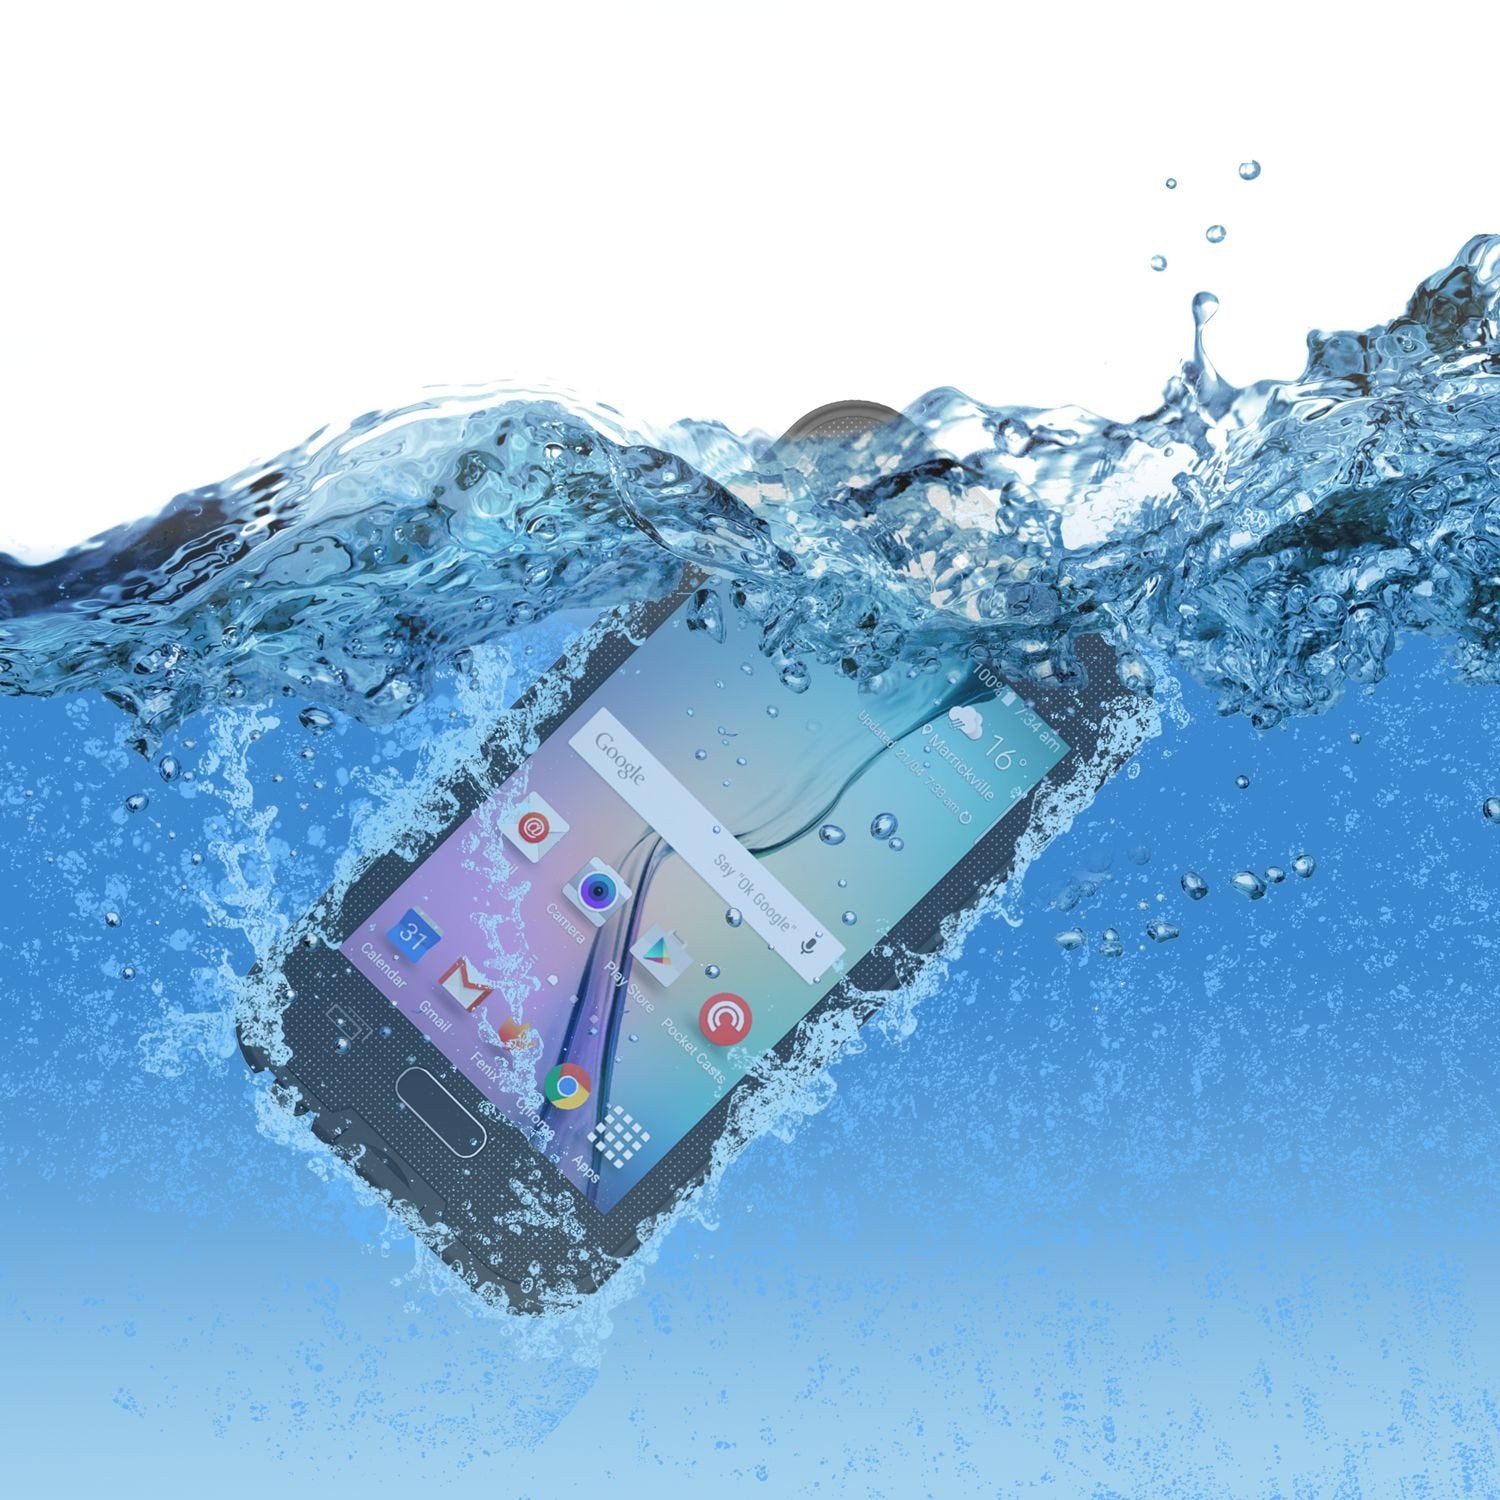 Galaxy S6 Waterproof Case, Punkcase SpikeStar Black Water/Shock/Dirt/Snow Proof | Lifetime Warranty